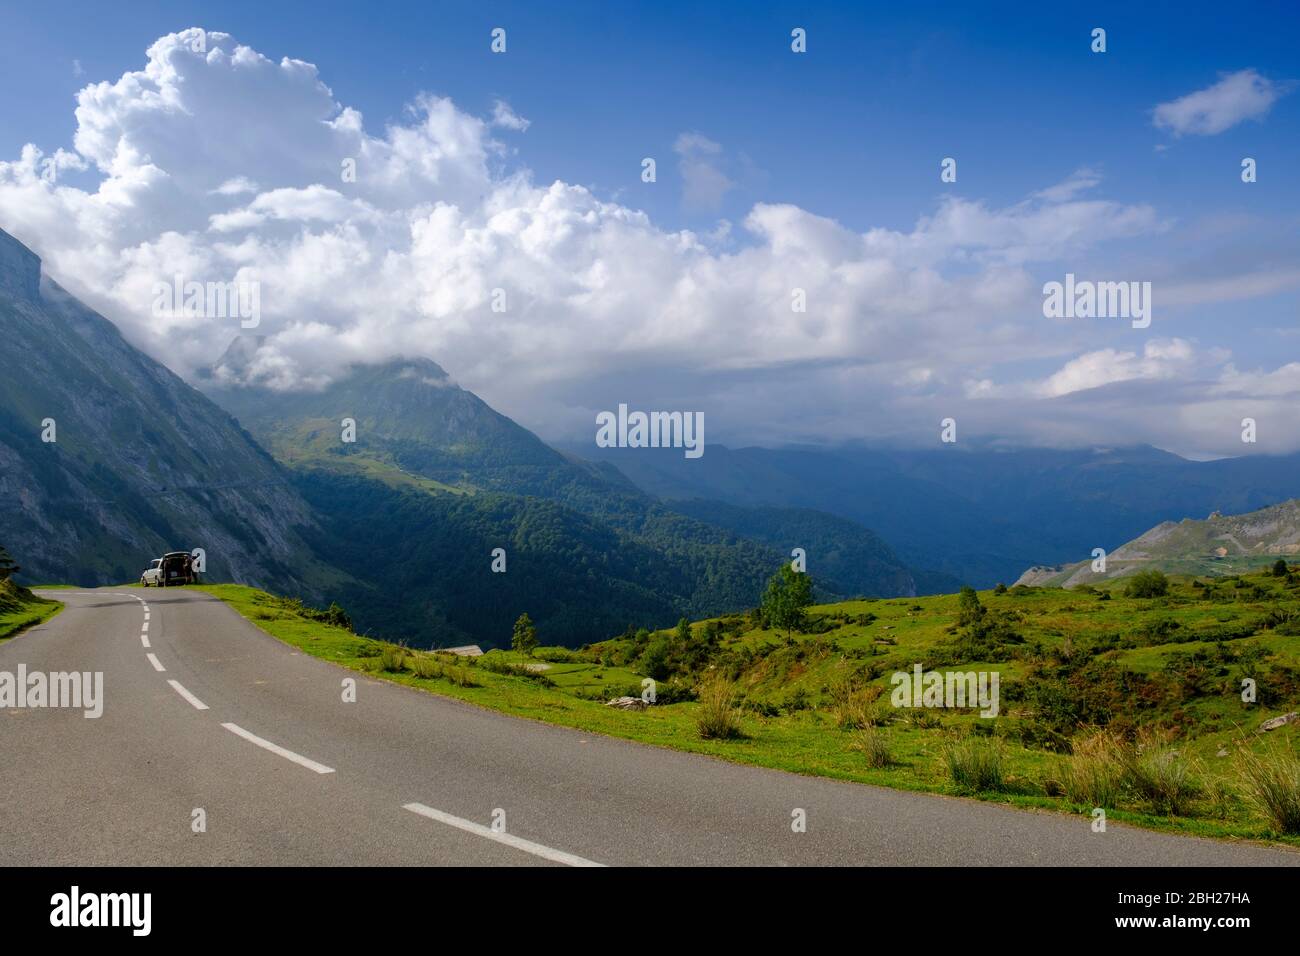 Francia, Altos Pirineos, carretera vacía en el paso de montaña Col dAubisque Foto de stock